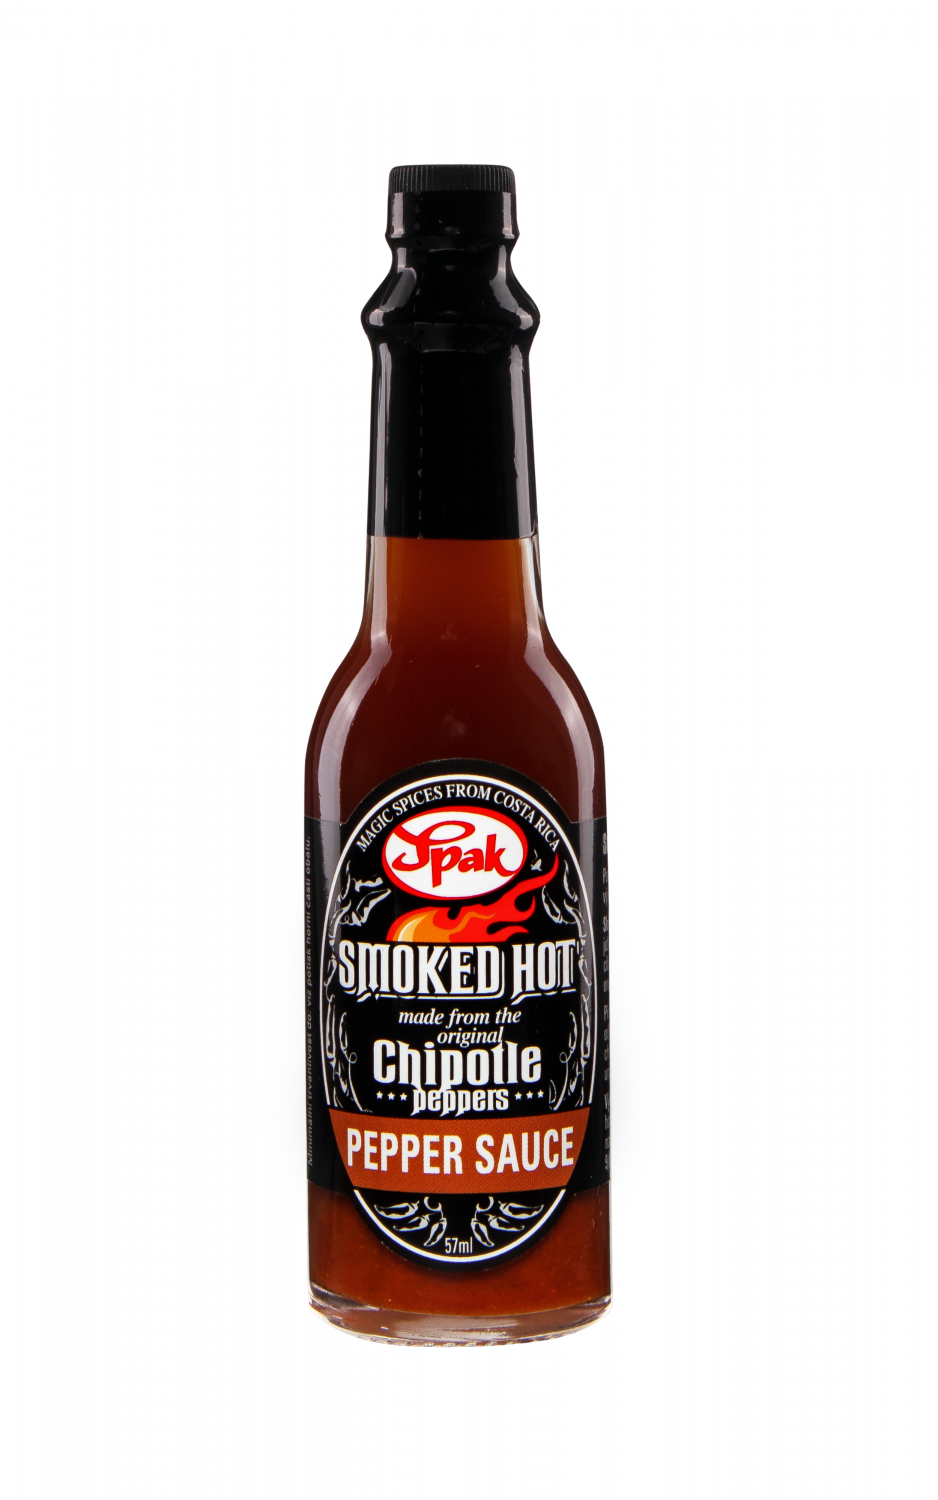 Pepper-sauce-Smoked-hot-57ml (1)